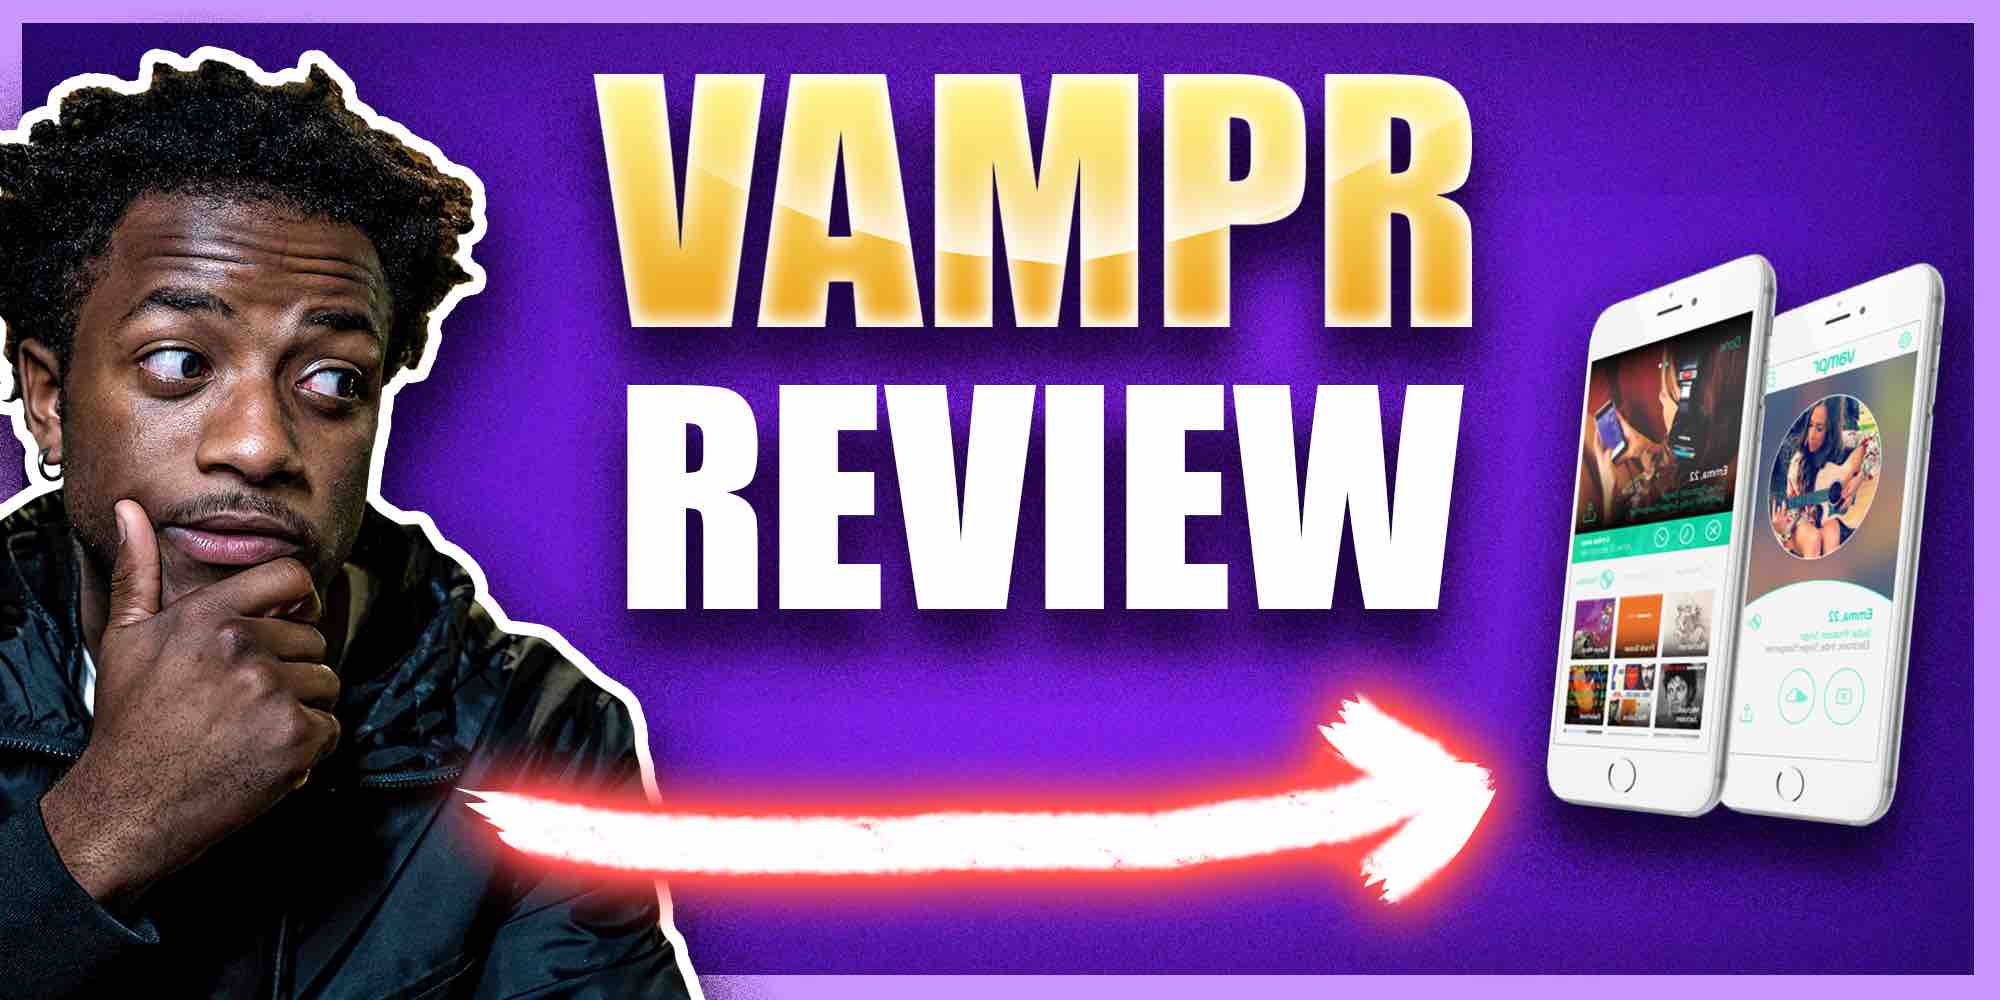 Vampr Review